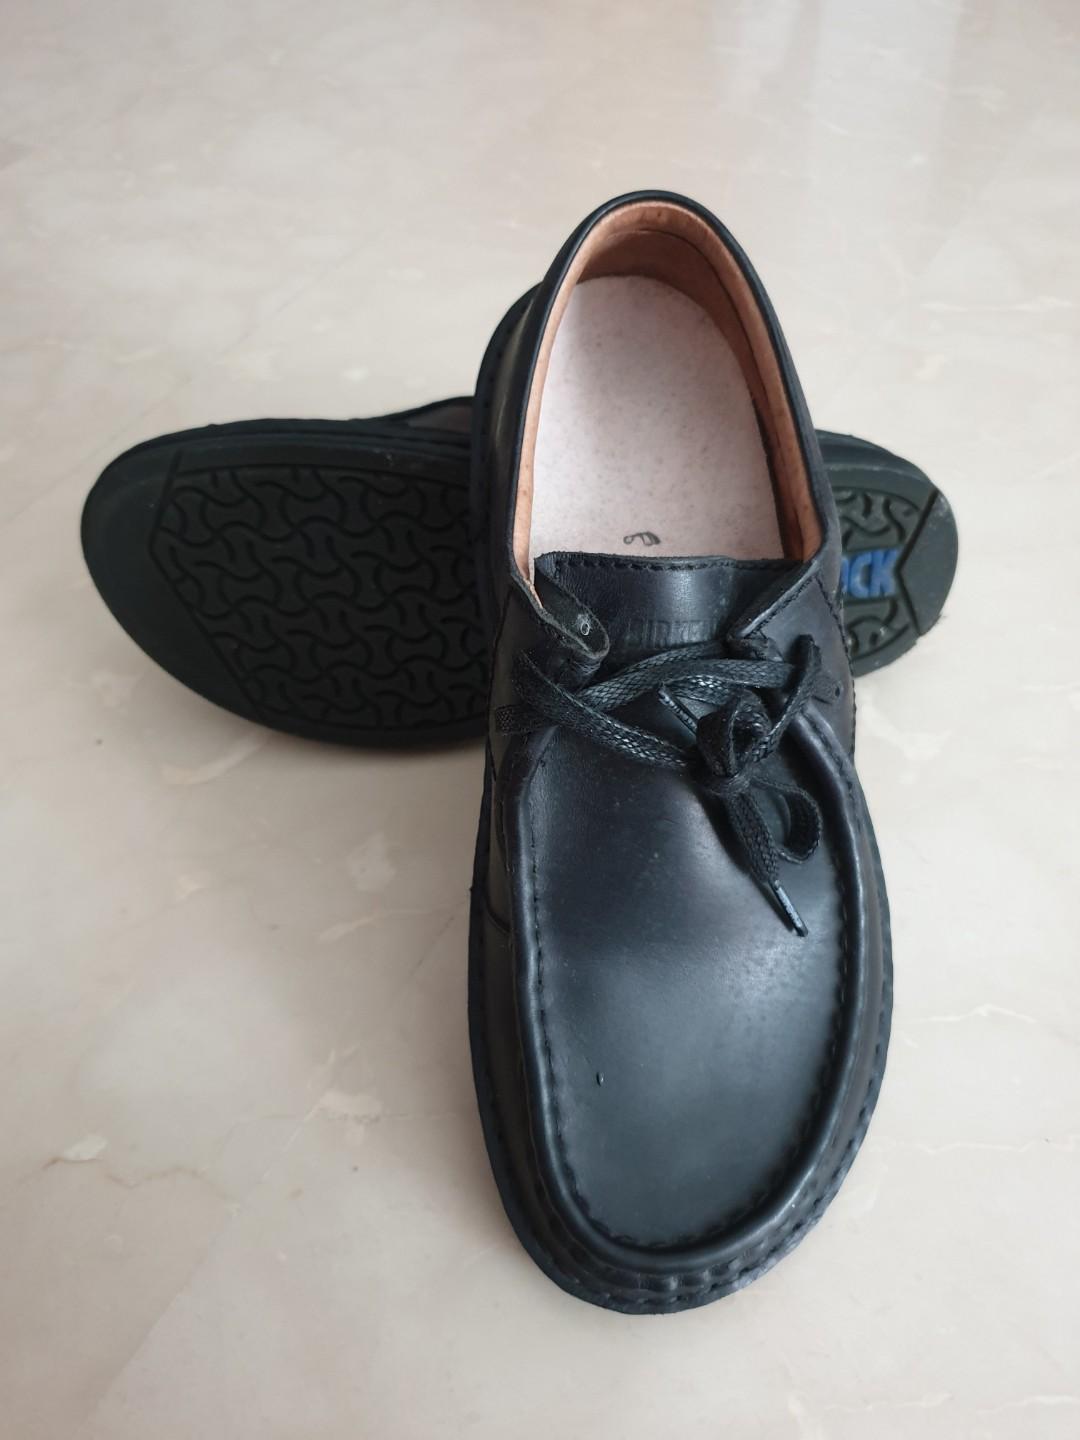 birkenstock men's dress shoes